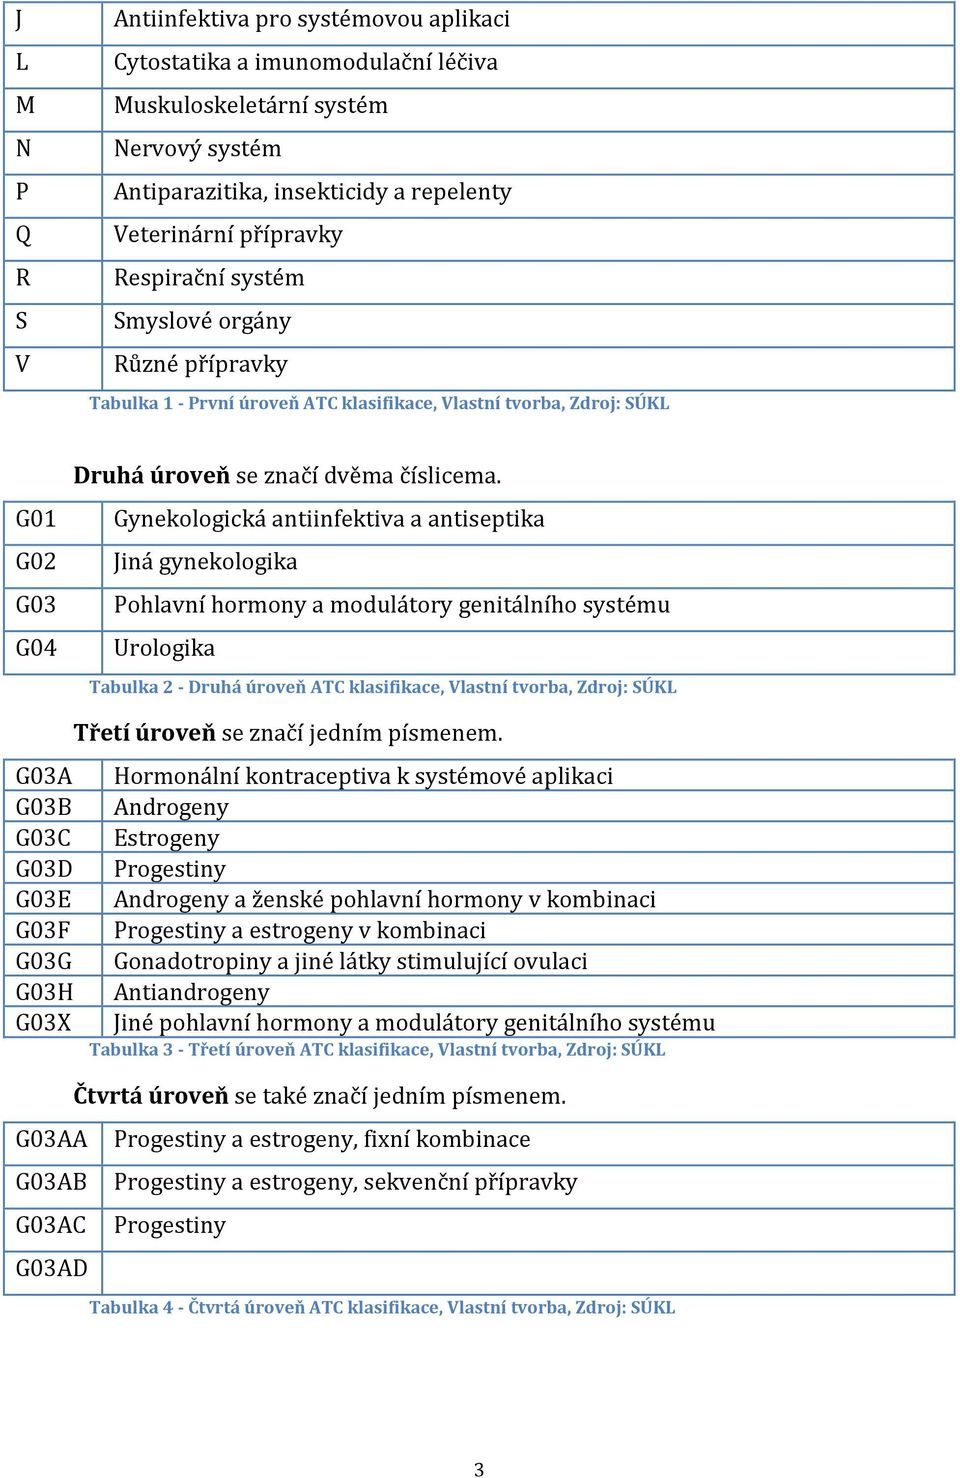 Gynekologická antiinfektiva a antiseptika Jiná gynekologika Pohlavní hormony a modulátory genitálního systému Urologika Tabulka 2 - Druhá úroveň ATC klasifikace, Vlastní tvorba, Zdroj: SÚKL G03A G03B